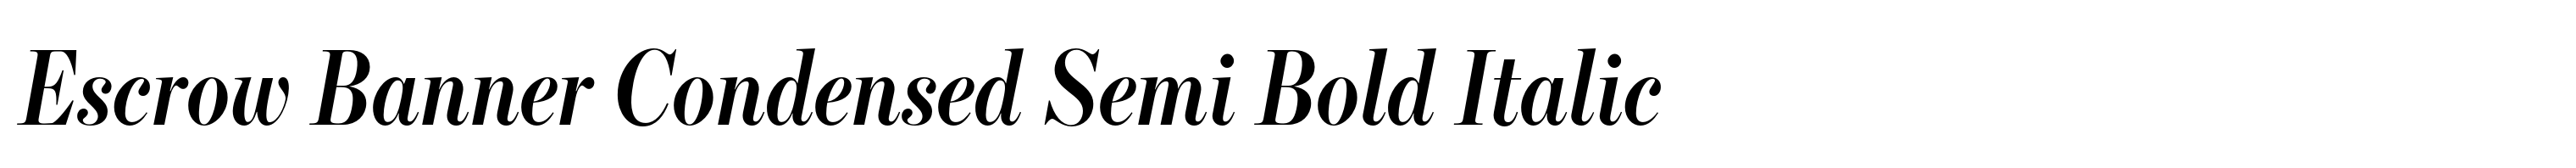 Escrow Banner Condensed Semi Bold Italic